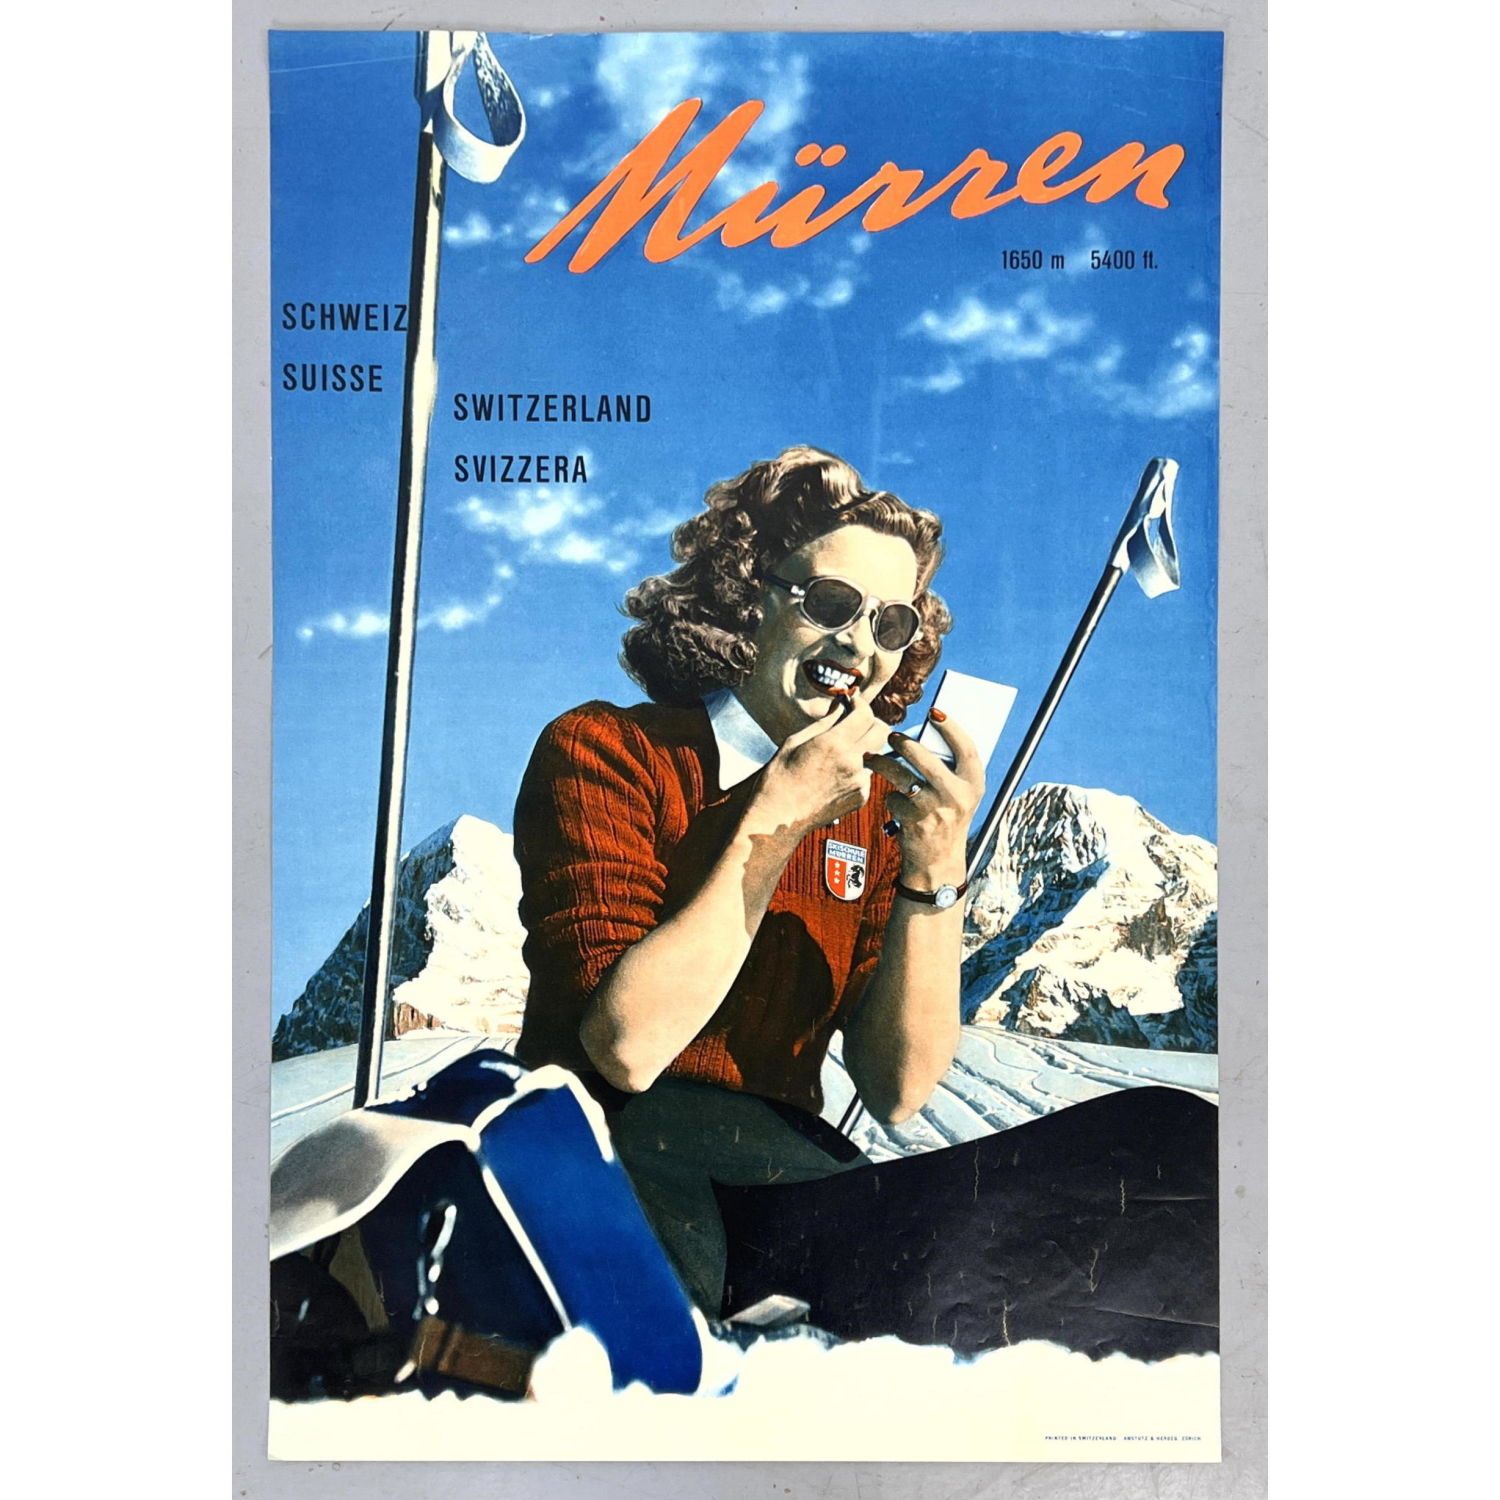 MURREN Switzerland Travel Advertising